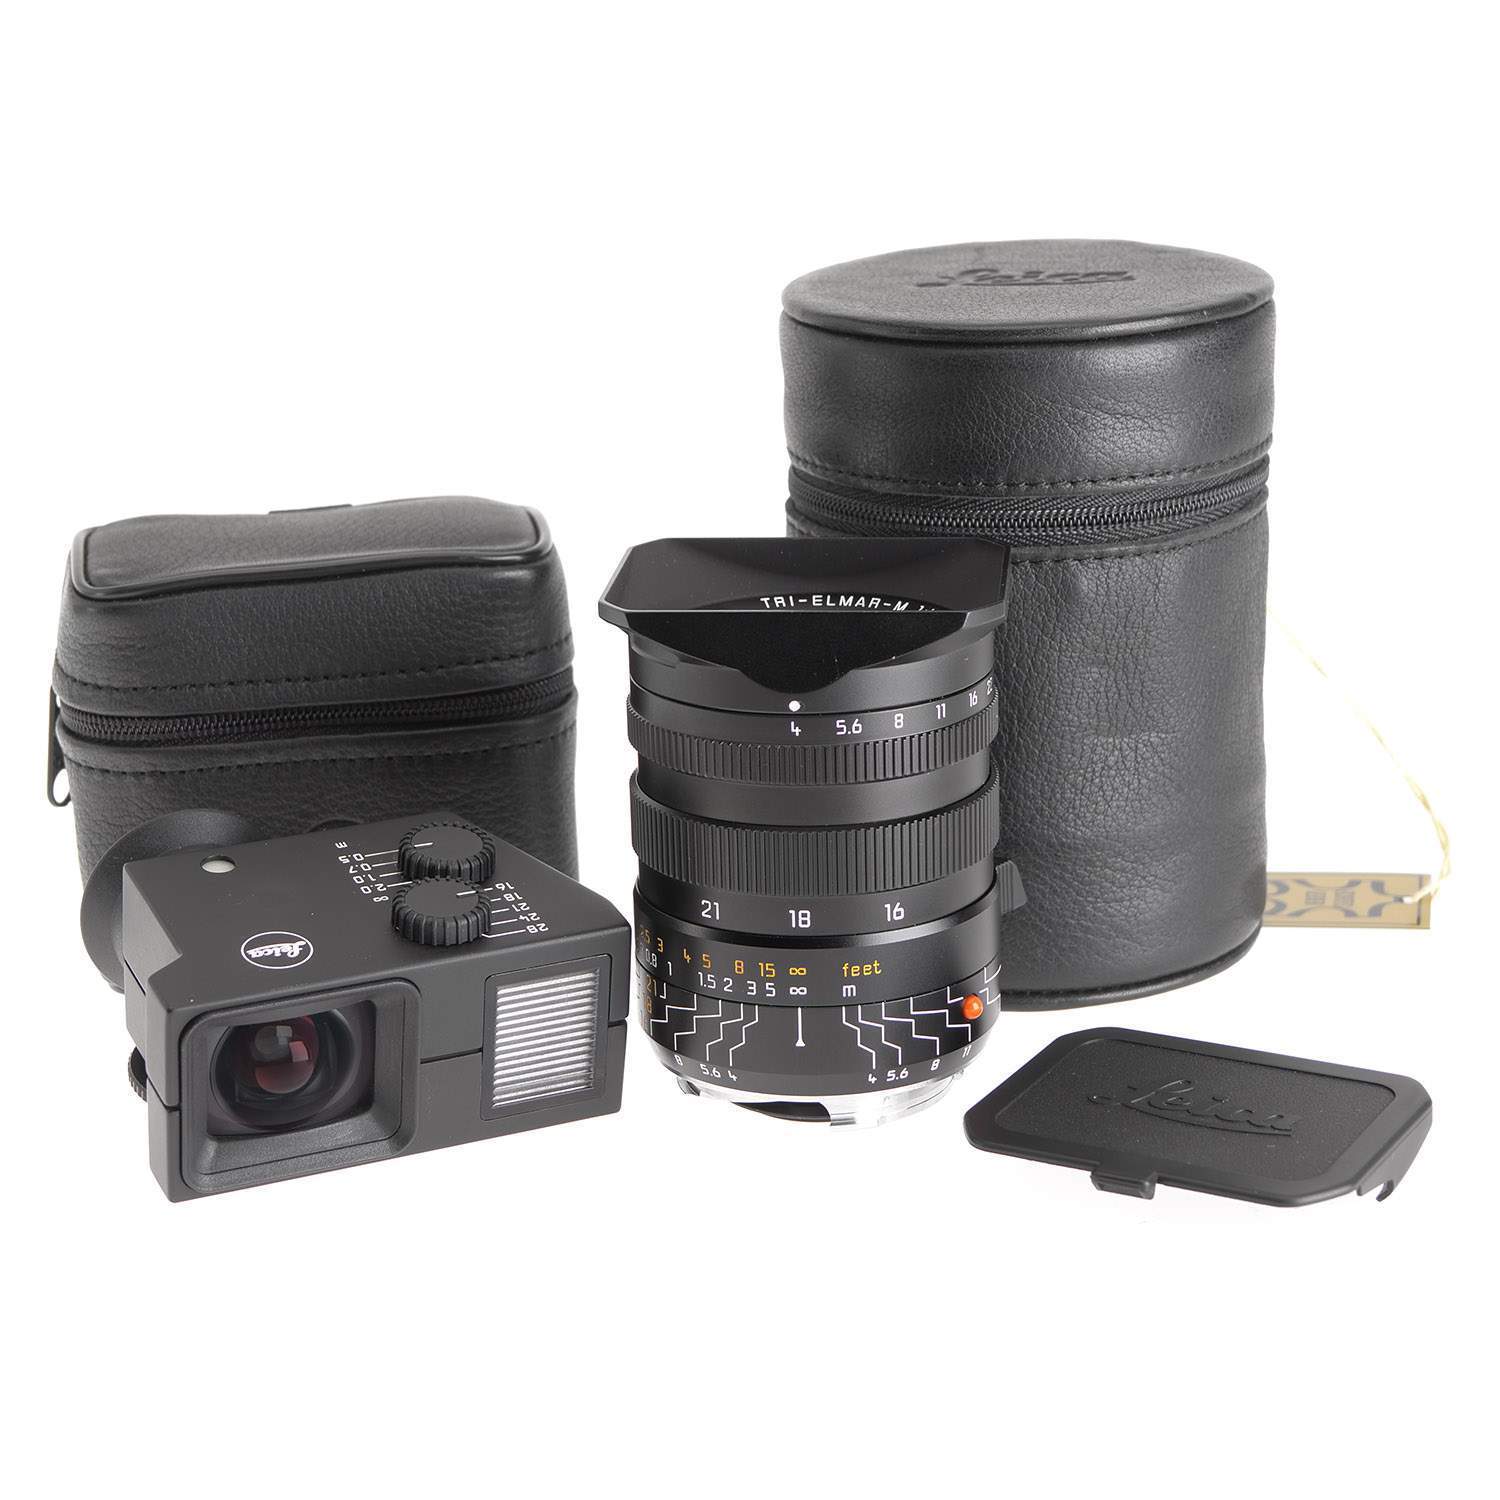 徕卡 Leica M 16-18-21/4 TRI-ELMAR-M ASPH 6-BIT 带取景器 